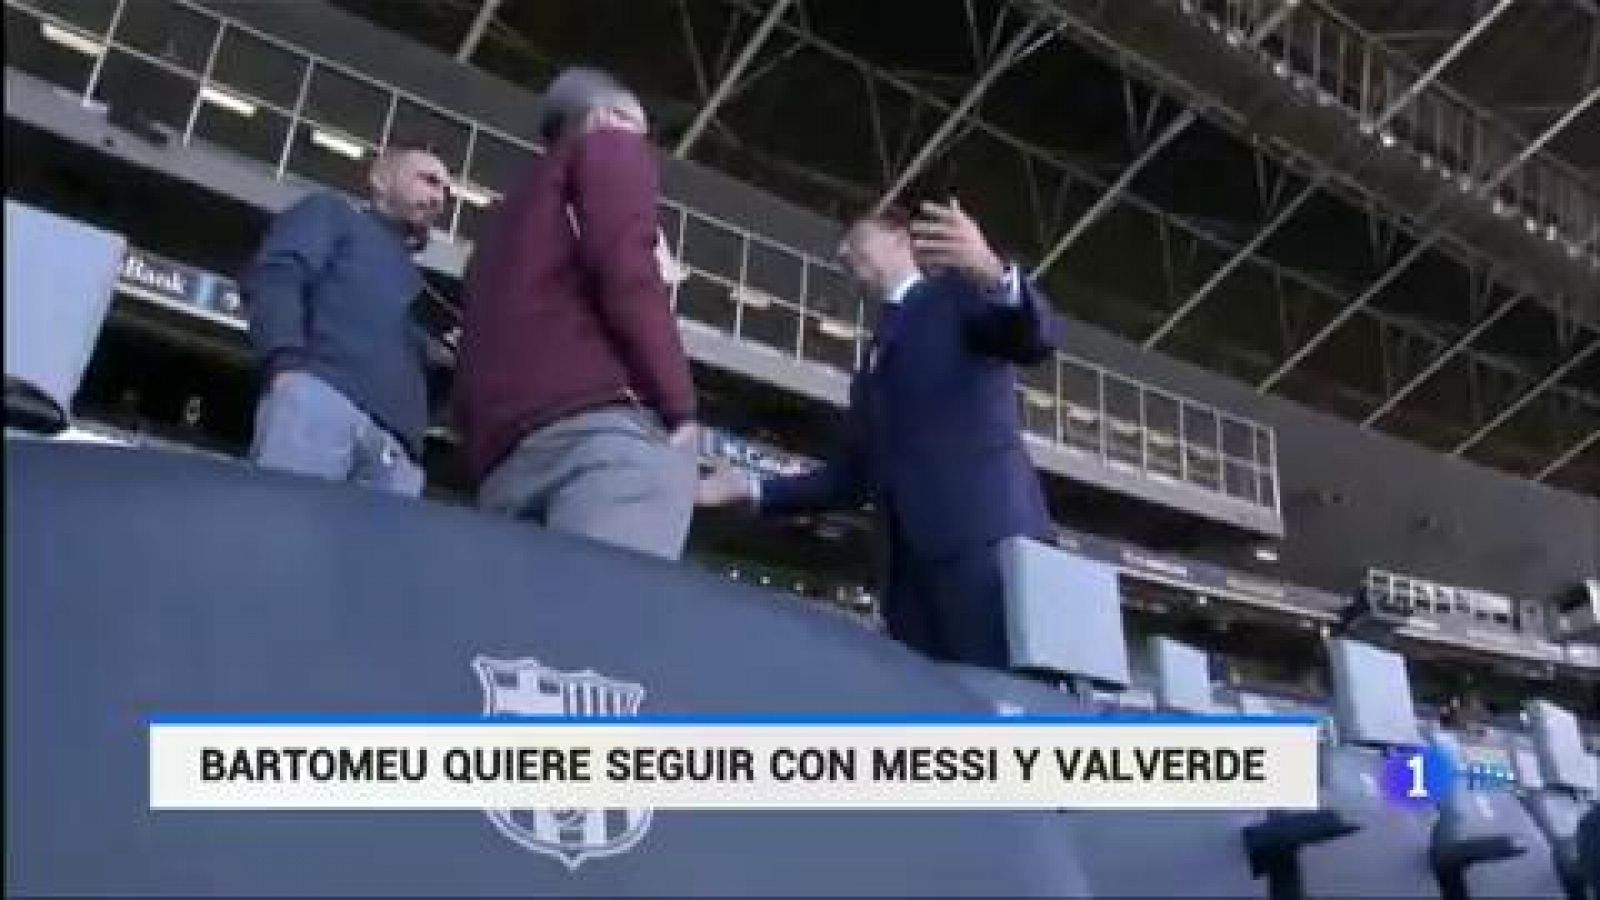 Bartomeu confía en Valverde y Messi